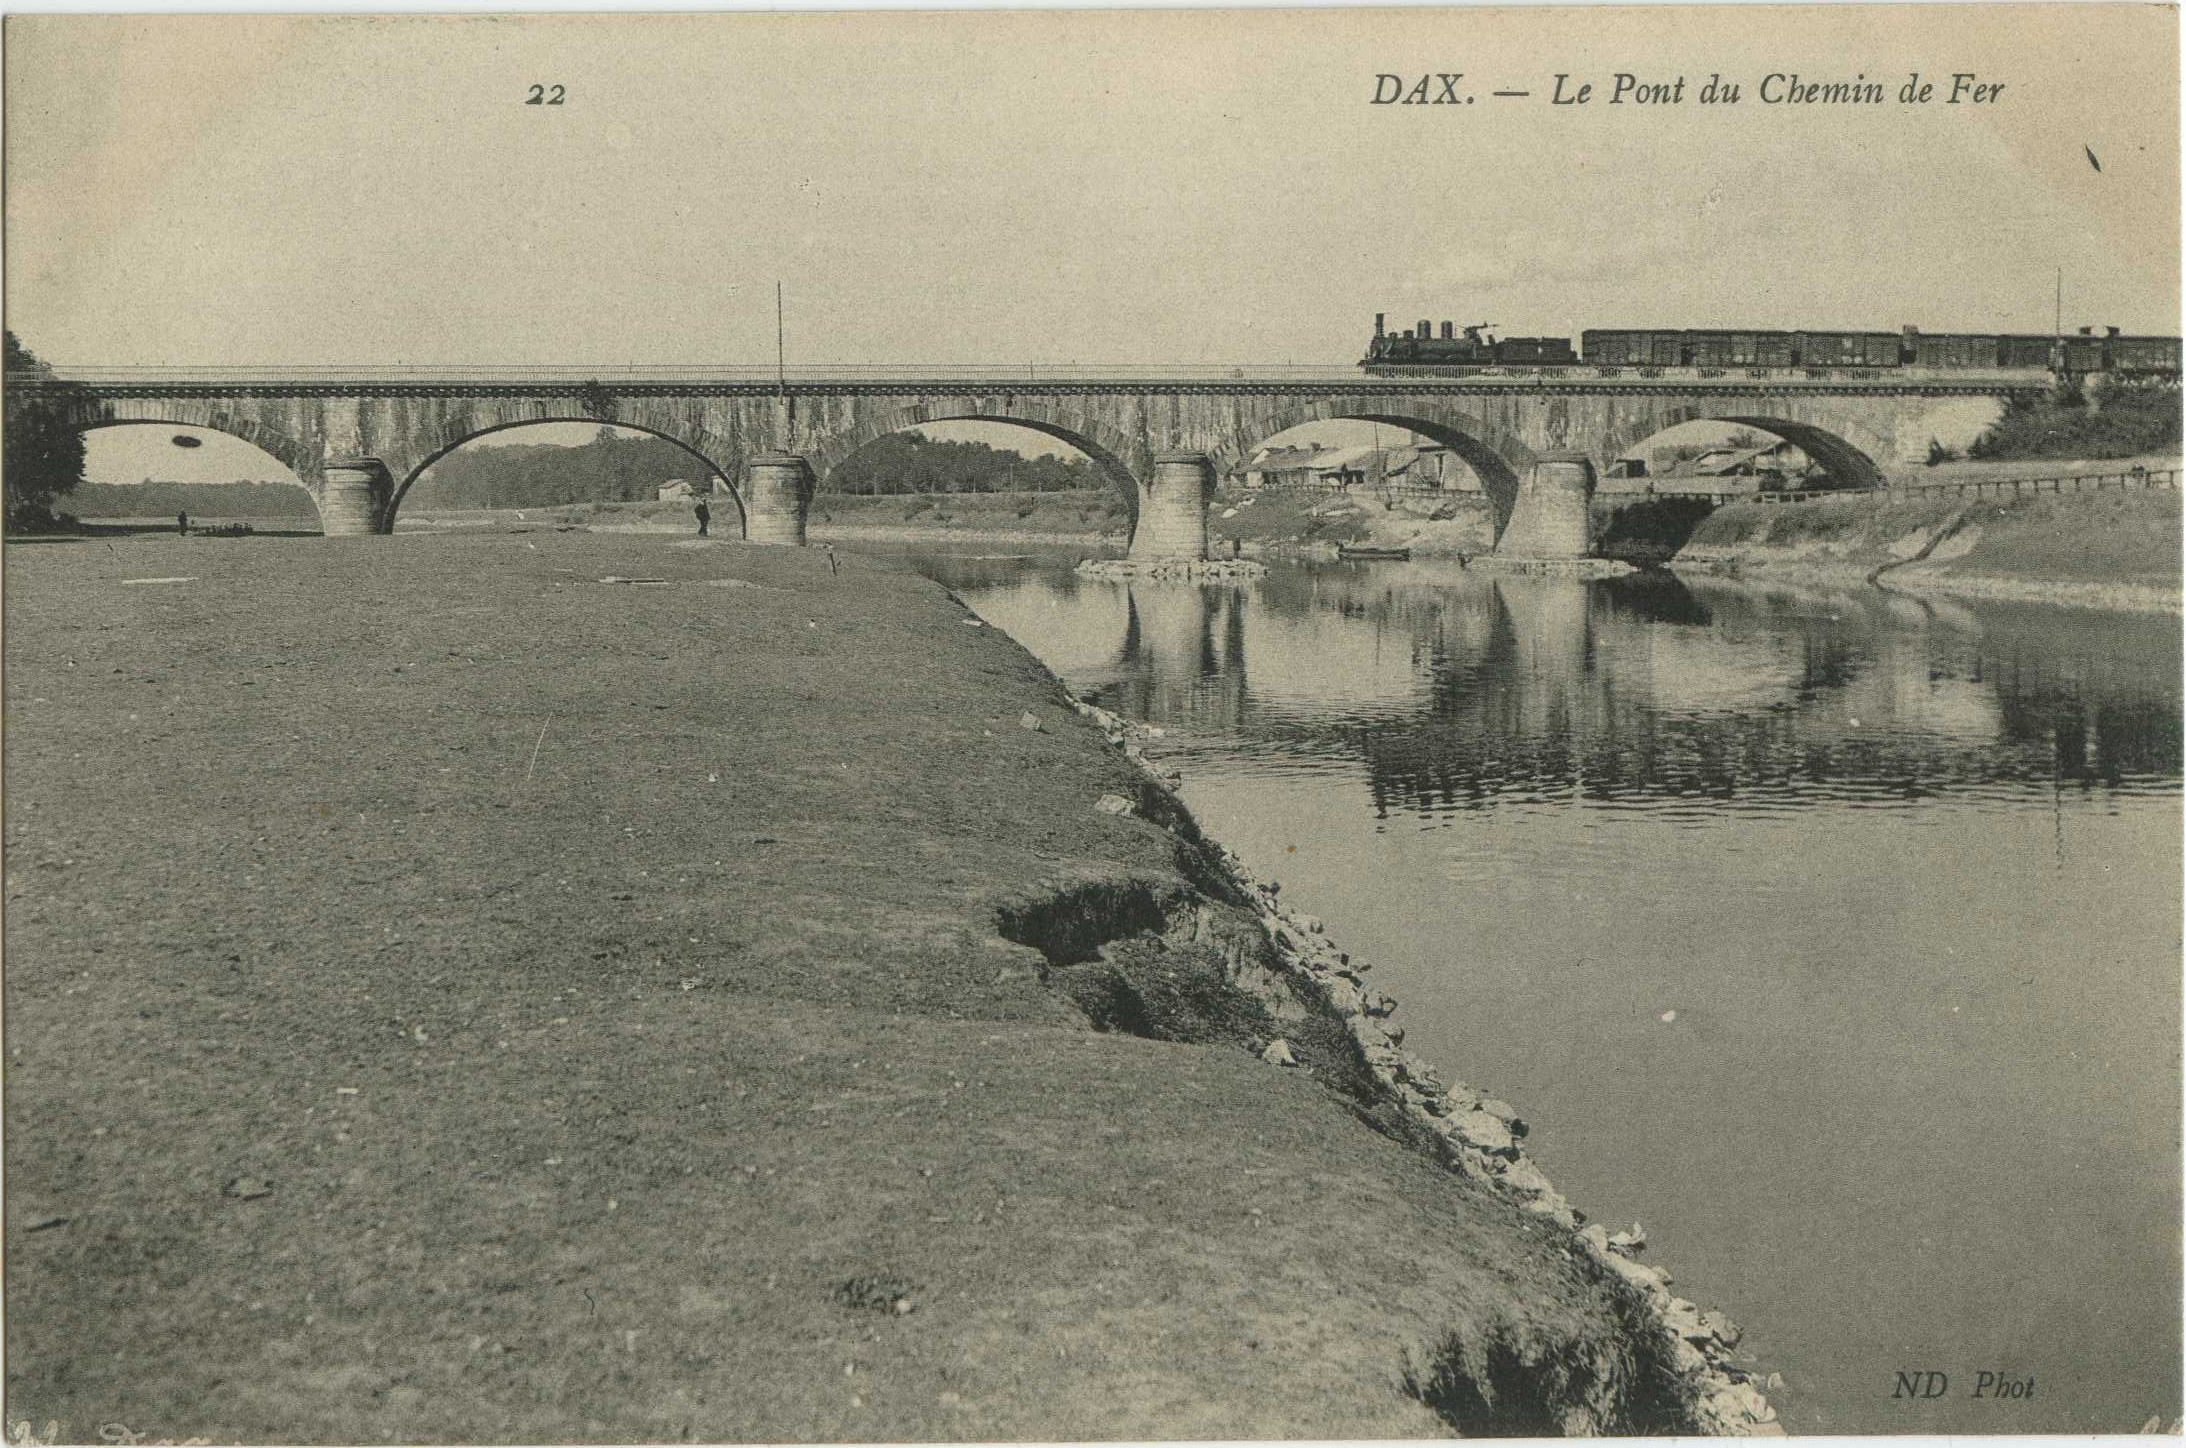 Dax - Le Pont du Chemin de Fer